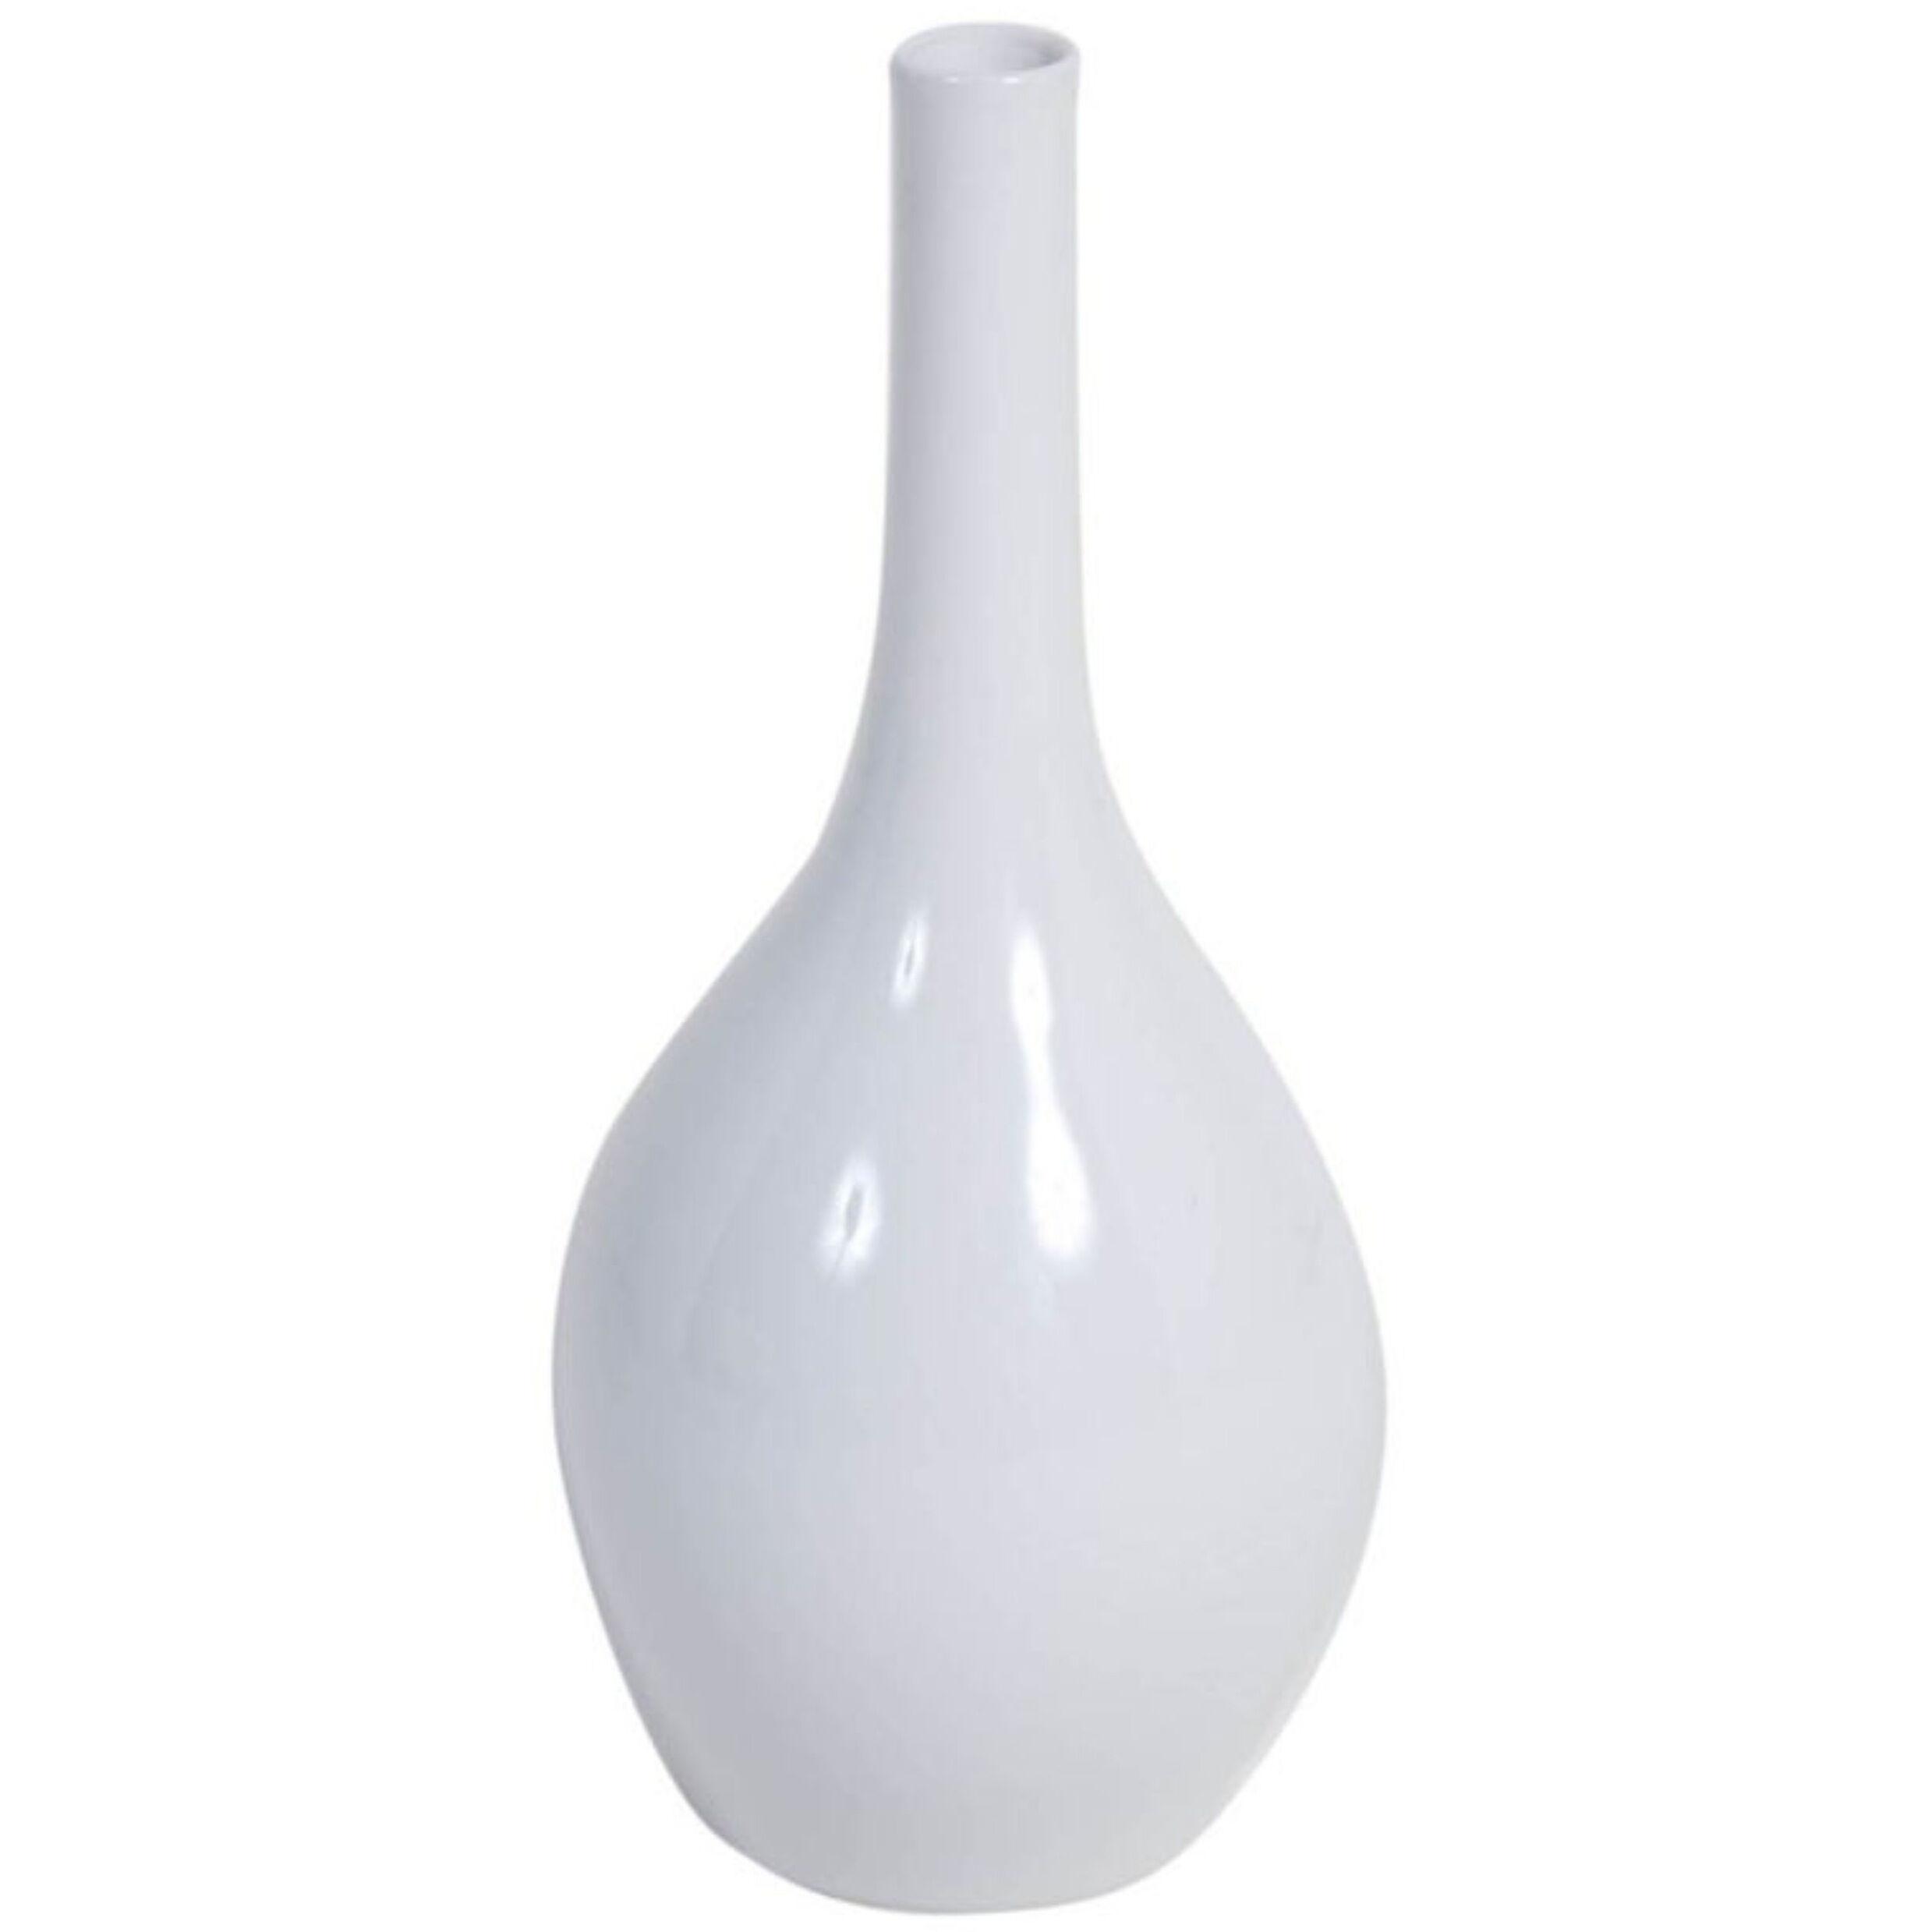 Porcelain Vase by Marguerite Wildenhain for KPM	